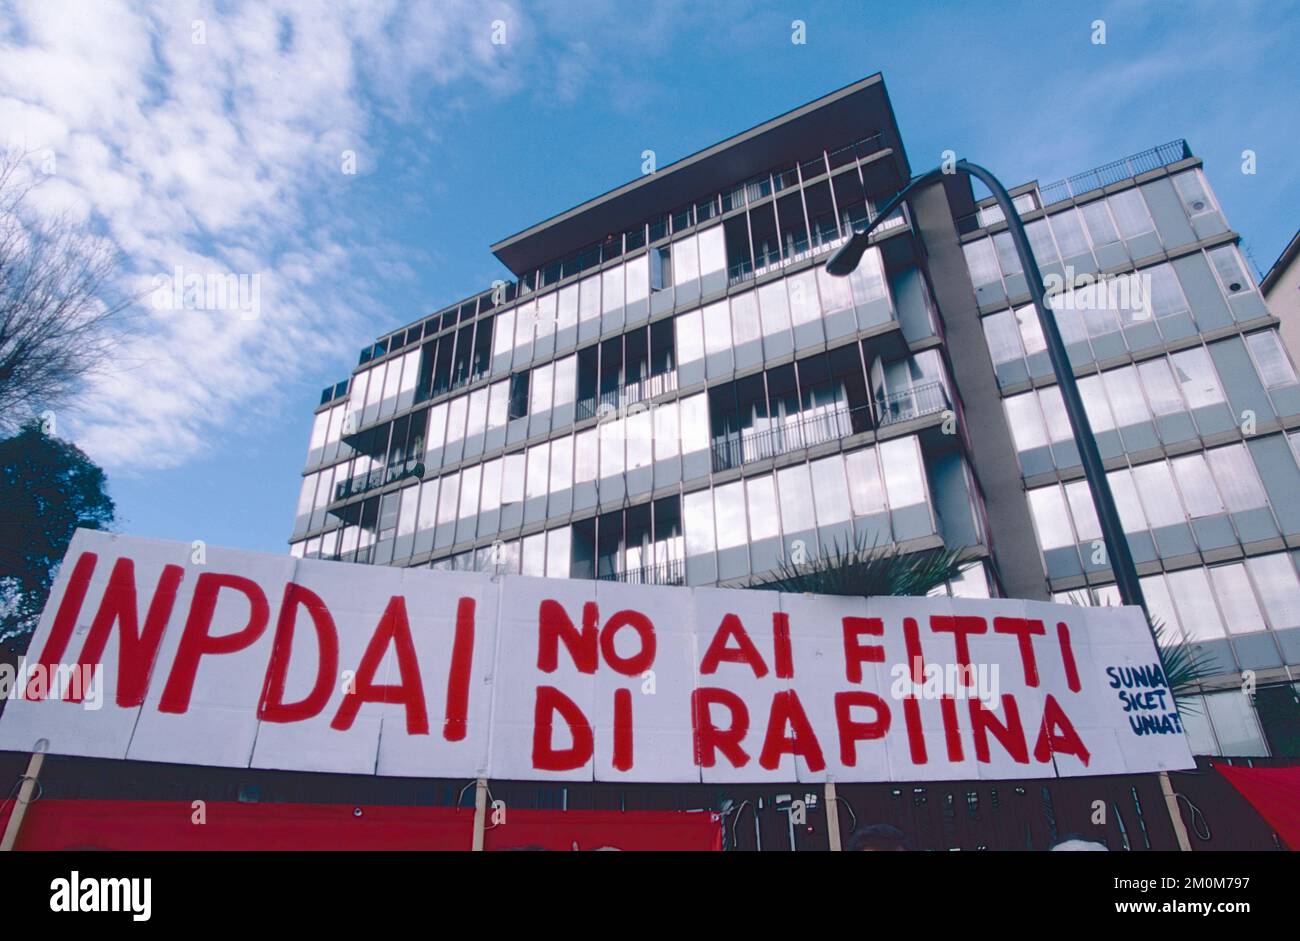 Protestdemonstration der Mieter gegen INPDAI teure Miete, Italien 1990er Stockfoto